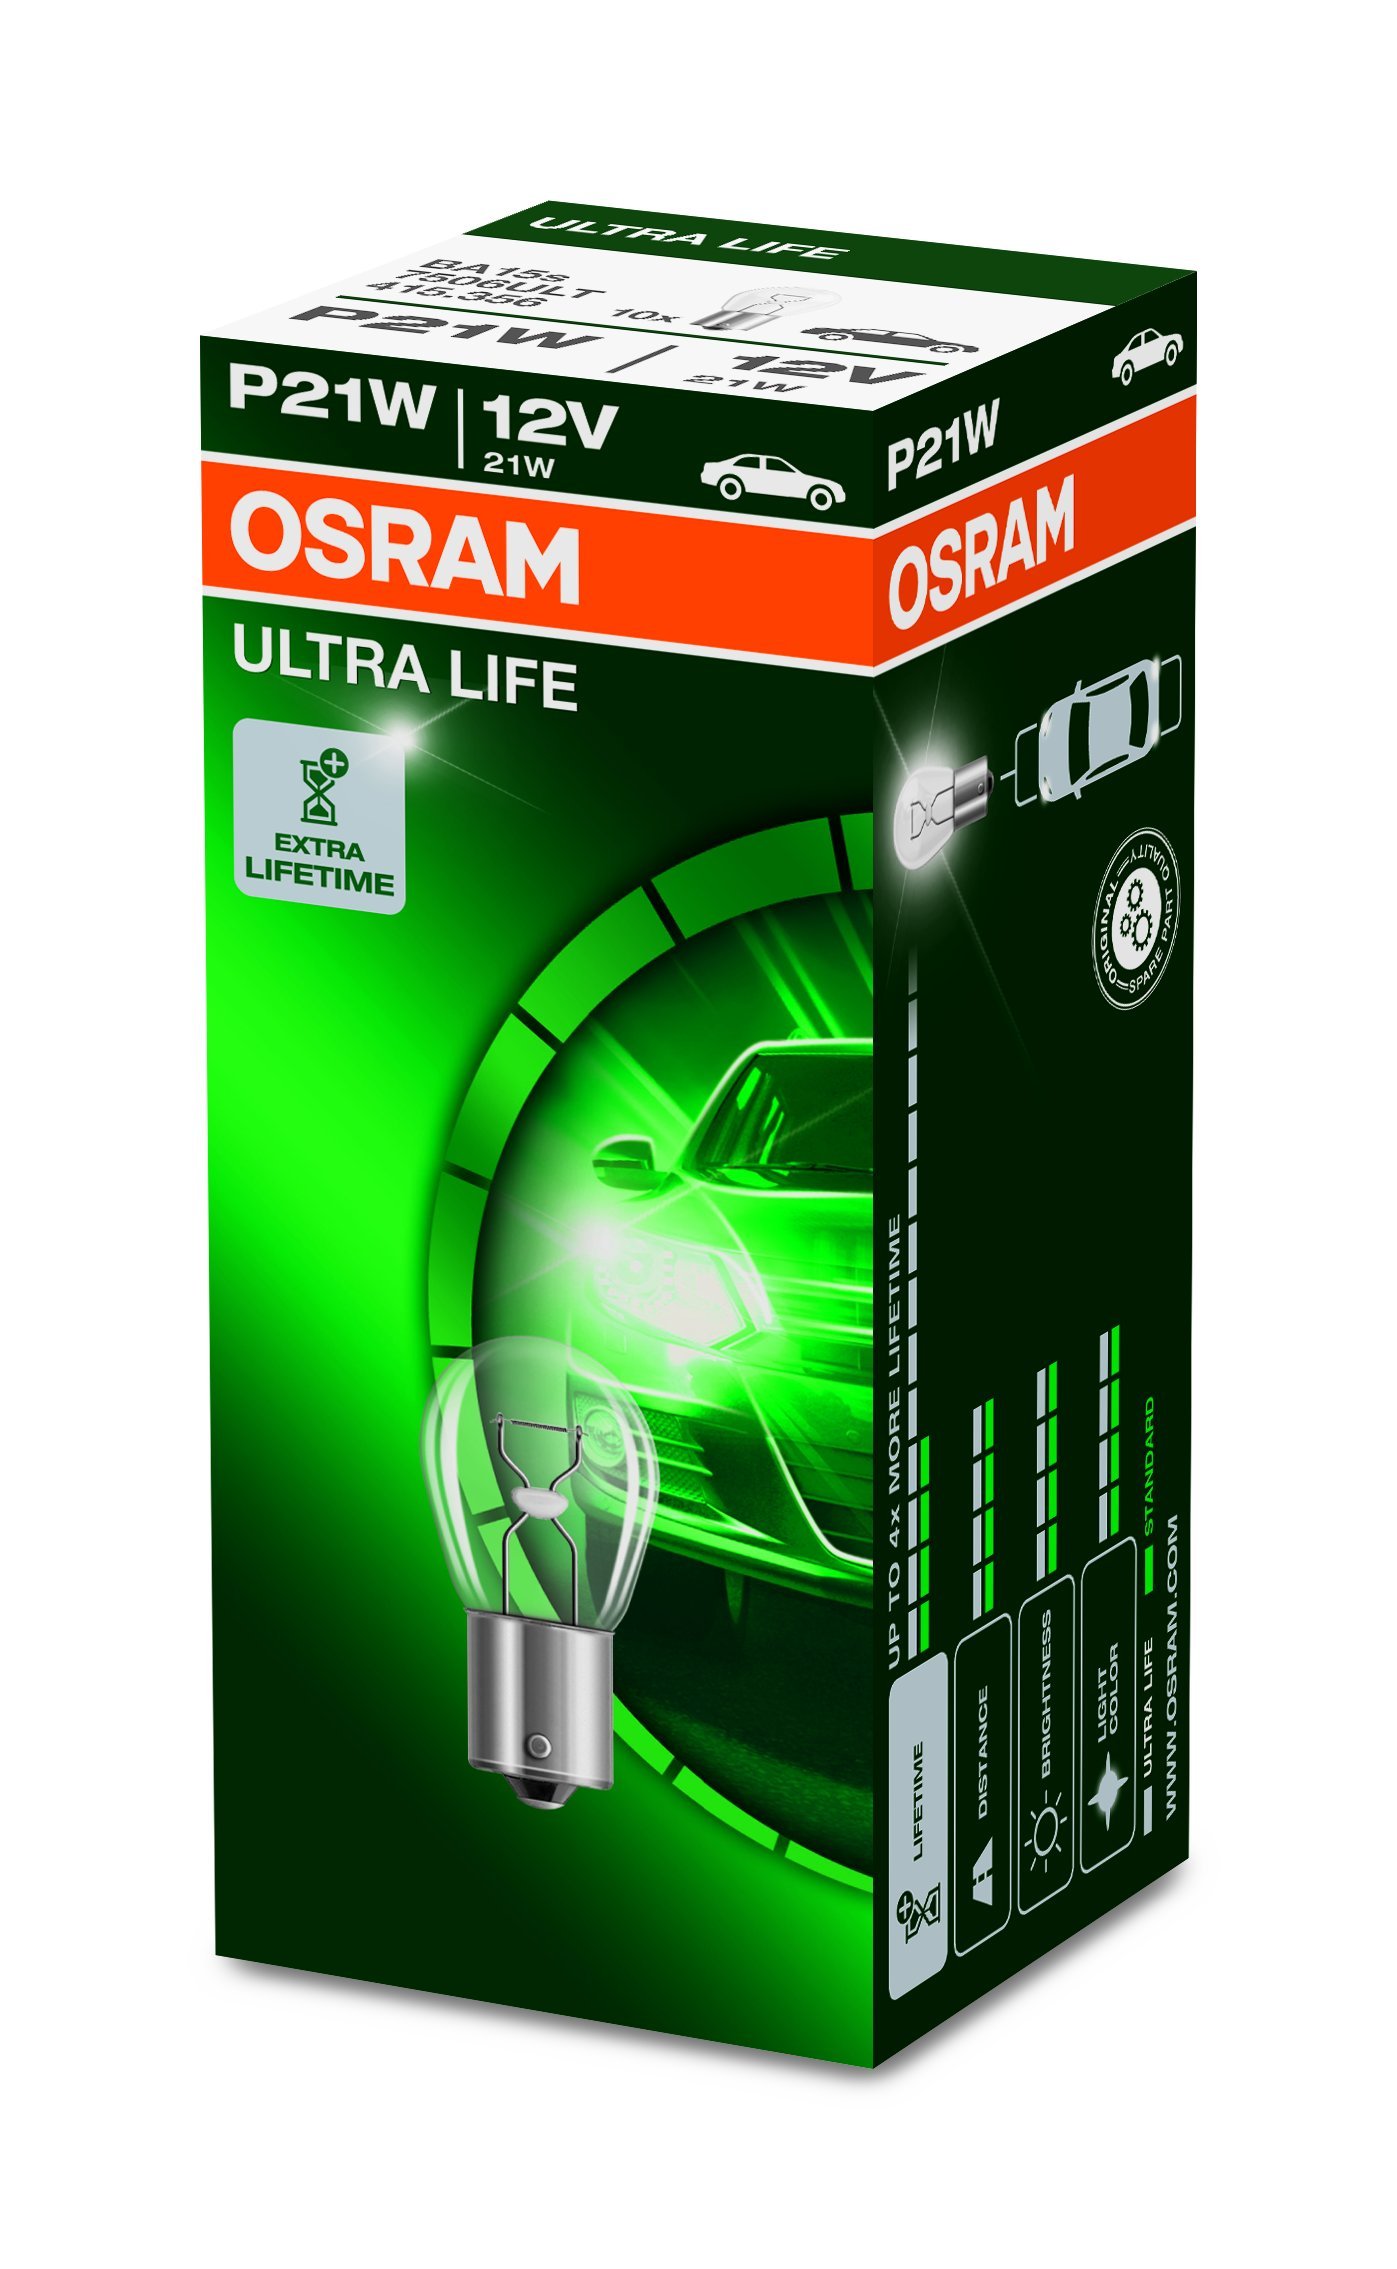 Osram ULTRA LIFE P21W, Halogen-Signallampe, Bremslicht, Nebenschlussleuchte, 7506ULT, 12V PKW, Faltschachtel (10 Stück) von Osram